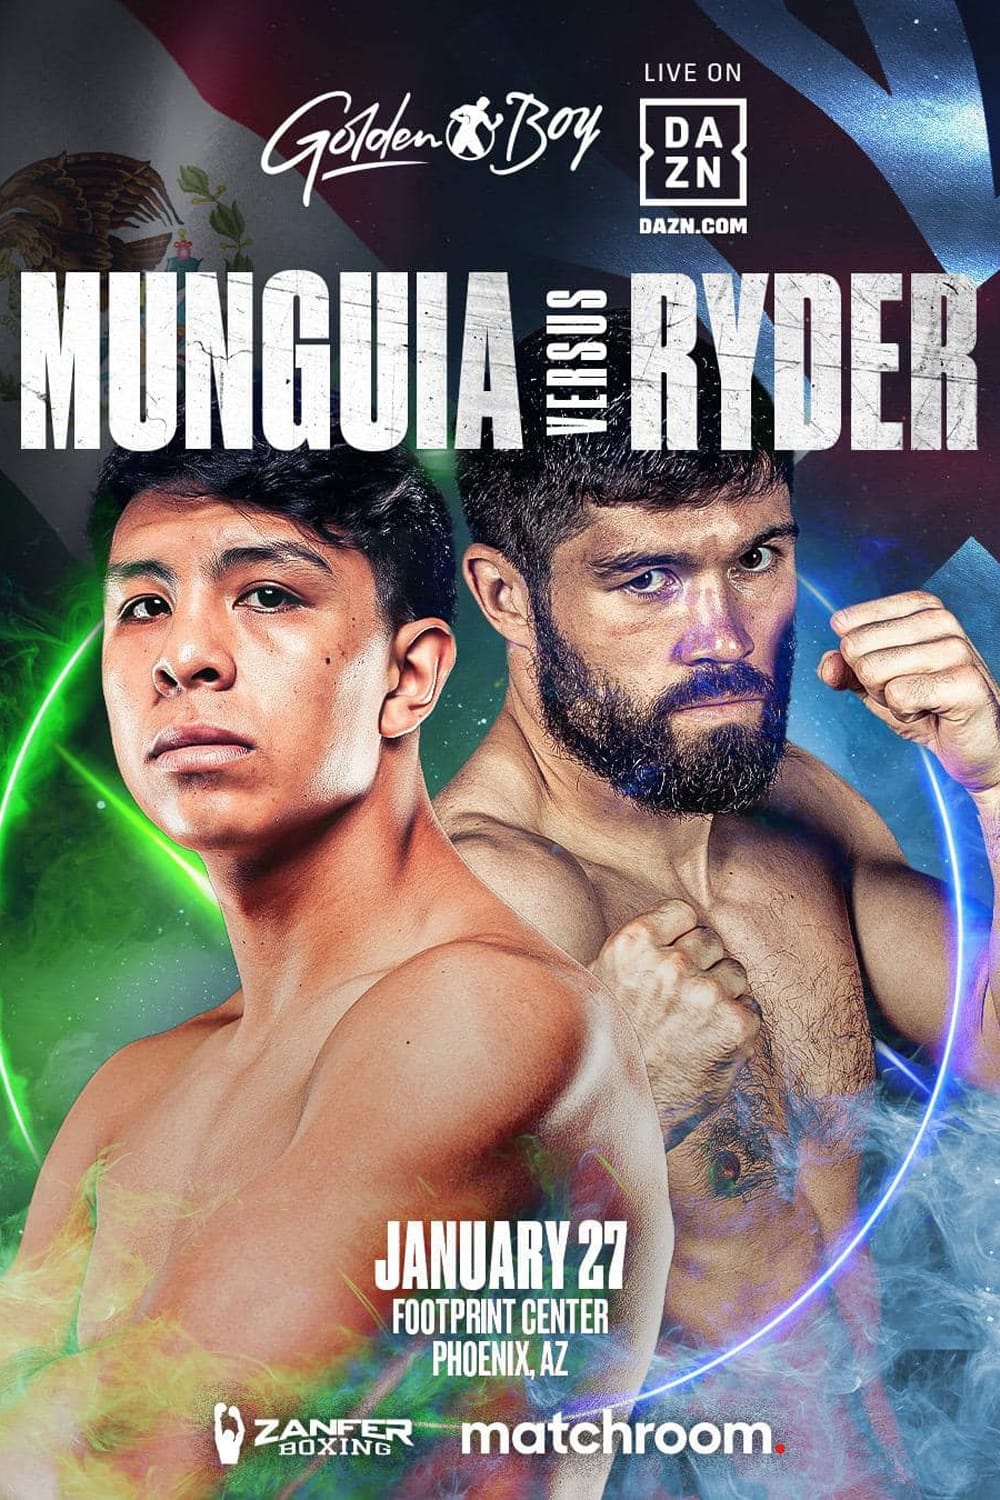 Jaime Munguia vs. John Ryder